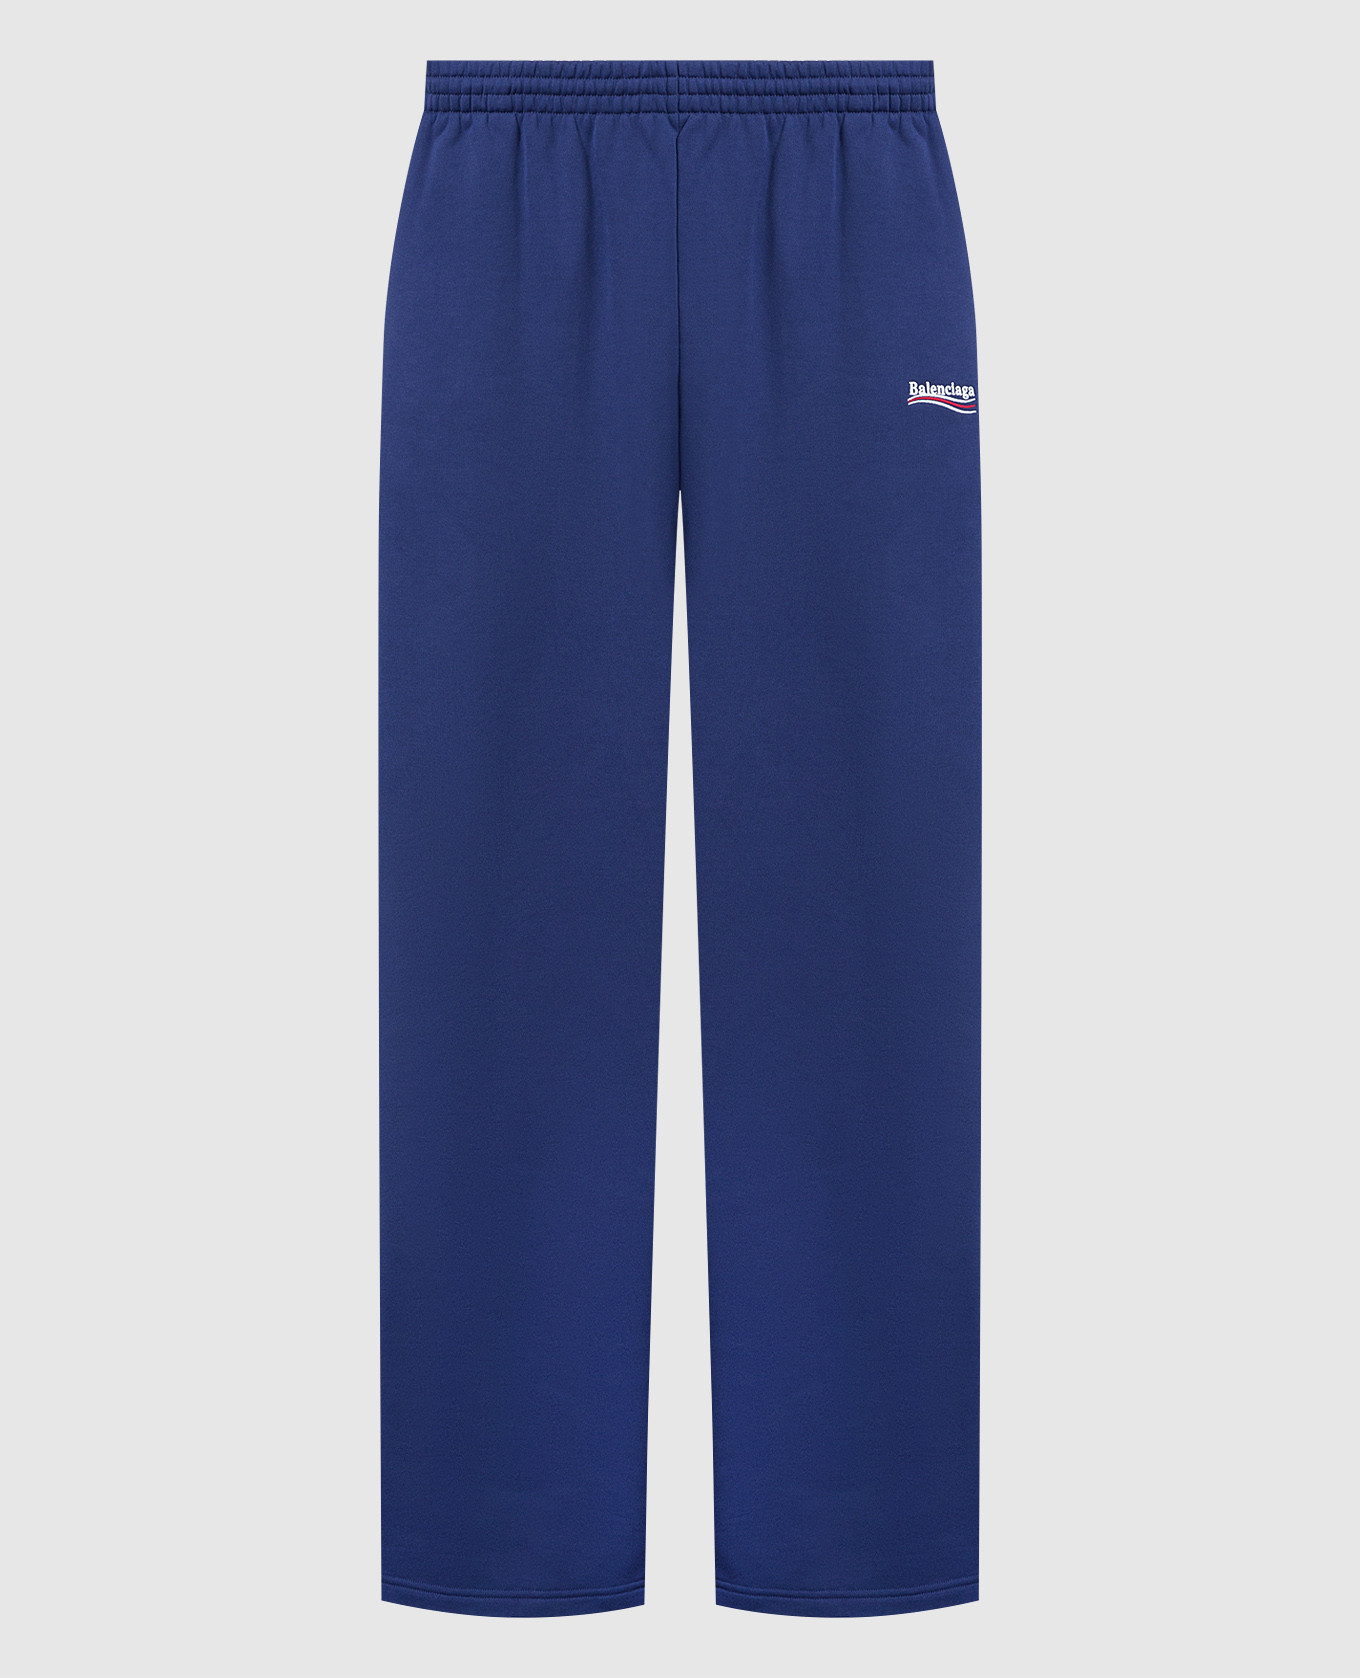 Синие спортивные брюки с контрастной вышивкой логотипа